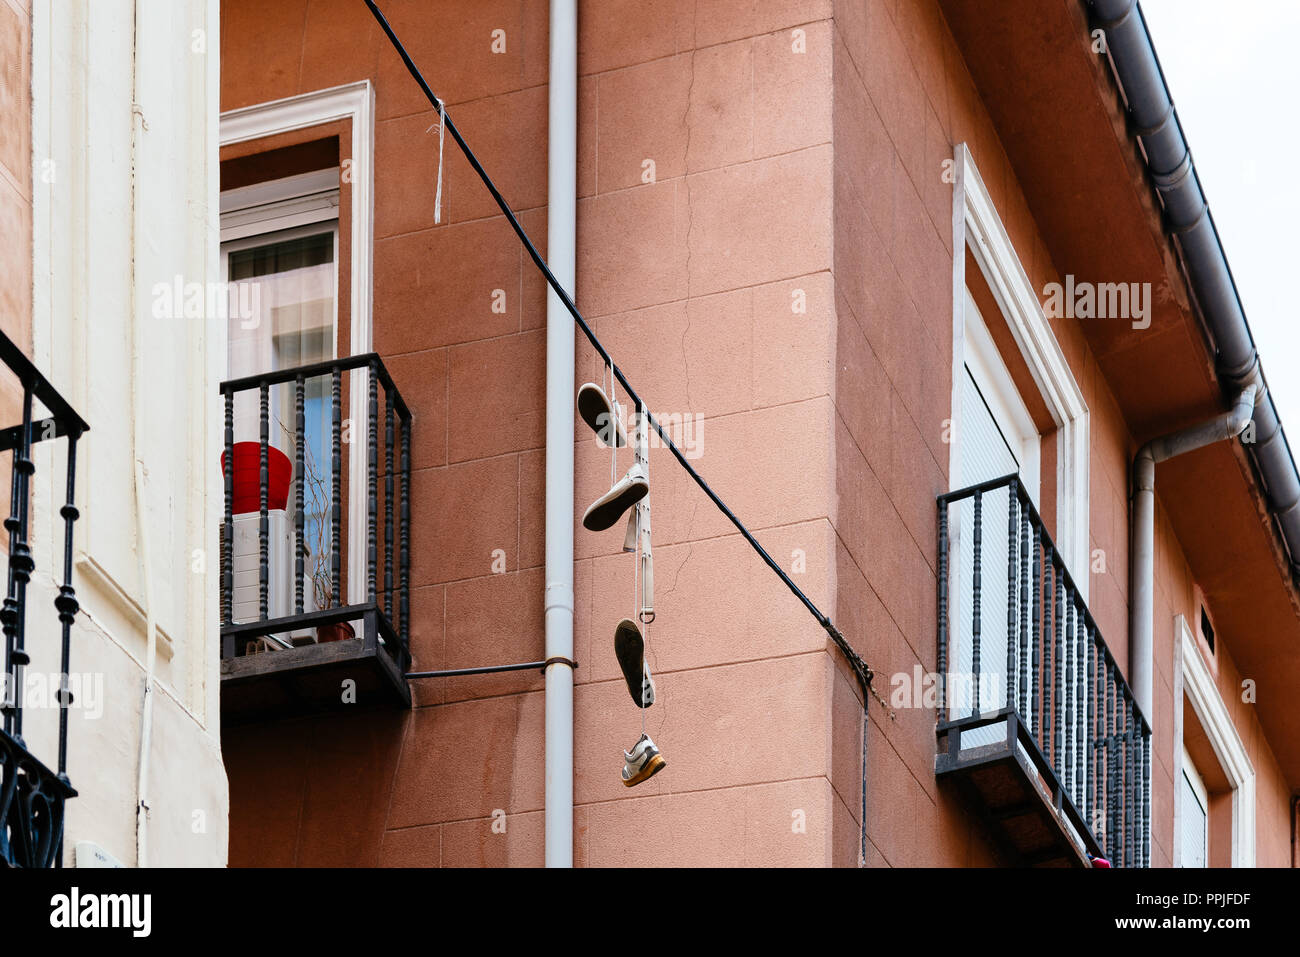 Schuhe hängen auf Draht in Lavapies Nachbarschaft. Es war die typische Nachbarschaft Madrids betrachtet, hat jetzt eine große eingewanderten Bevölkerung und ha Stockfoto